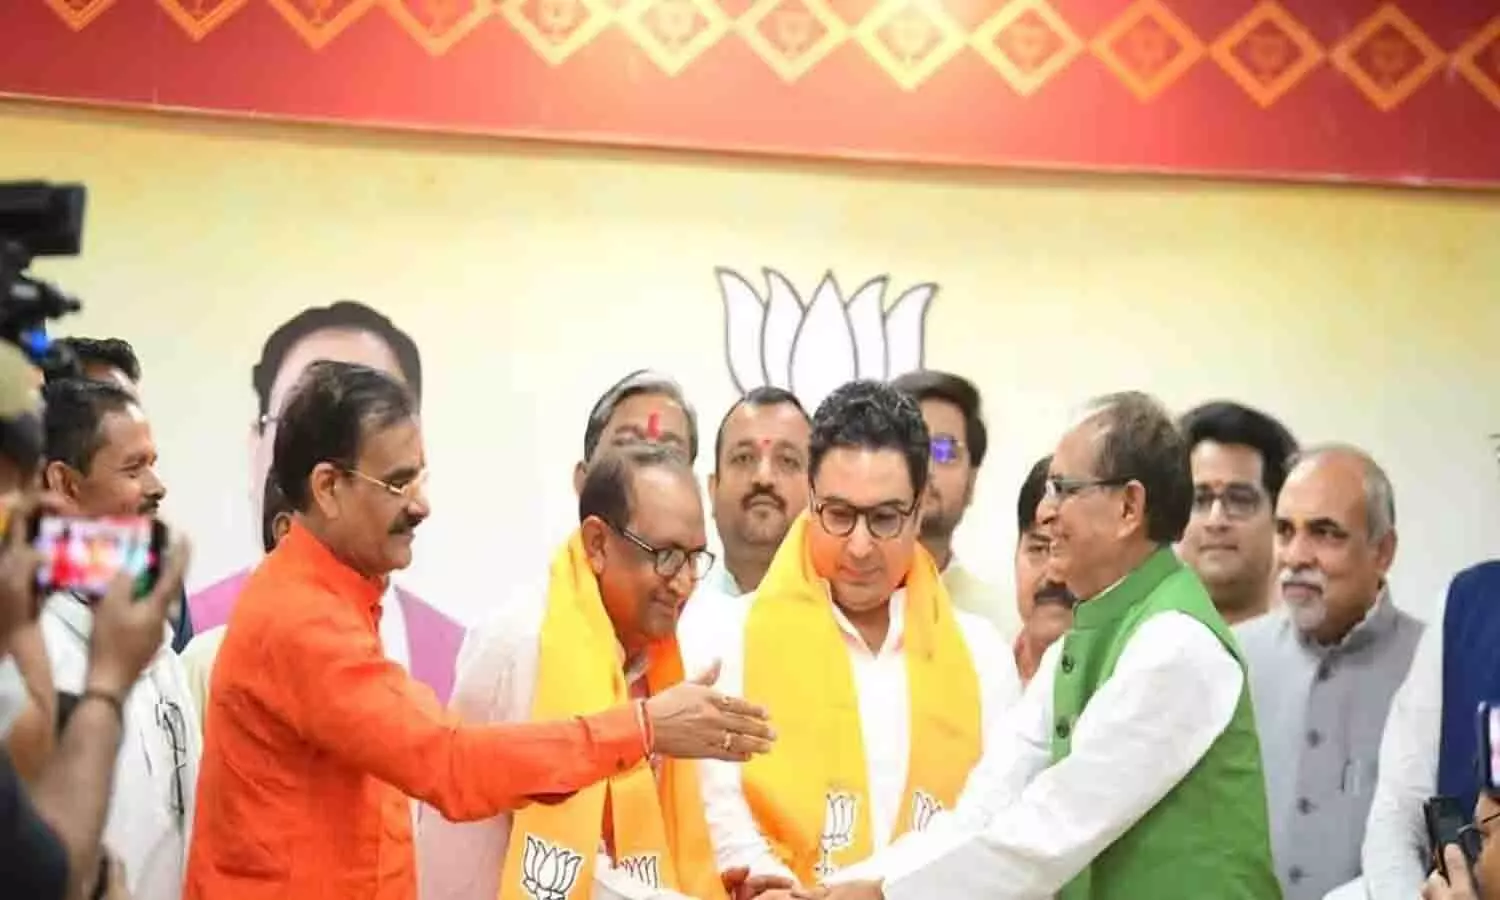 रीवा: विधानसभा क्षेत्र त्योंथर से सिद्धार्थ तिवारी राज ने रमाशंकर सिंह को 4746 मतों के अंतर से हराया